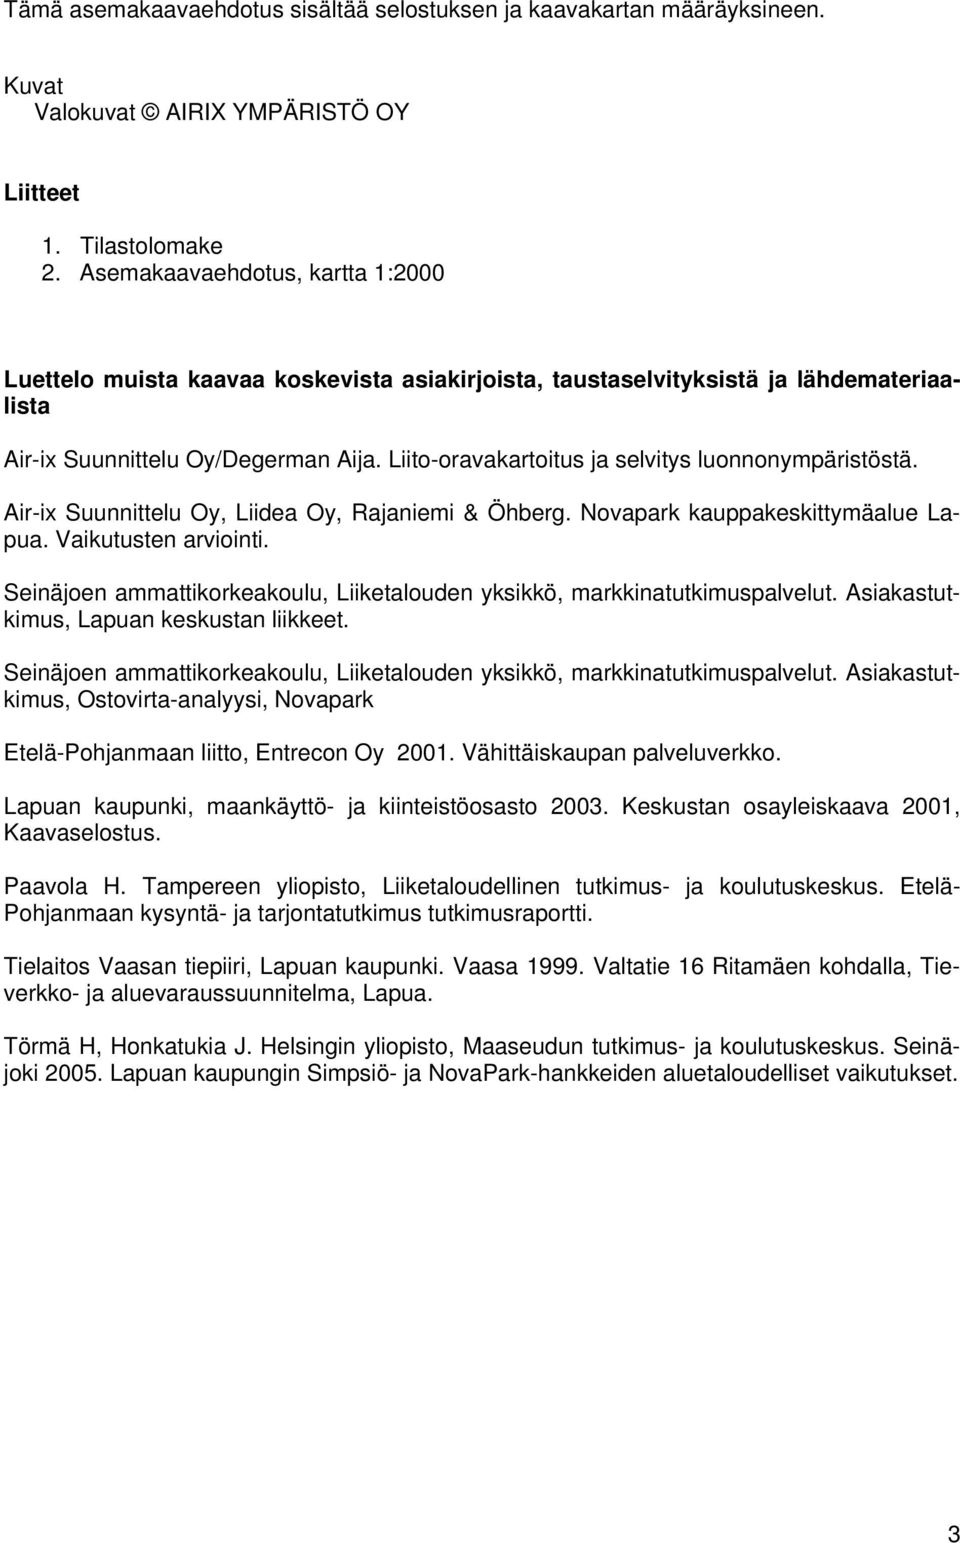 Liito-oravakartoitus ja selvitys luonnonympäristöstä. Air-ix Suunnittelu Oy, Liidea Oy, Rajaniemi & Öhberg. Novapark kauppakeskittymäalue Lapua. Vaikutusten arviointi.